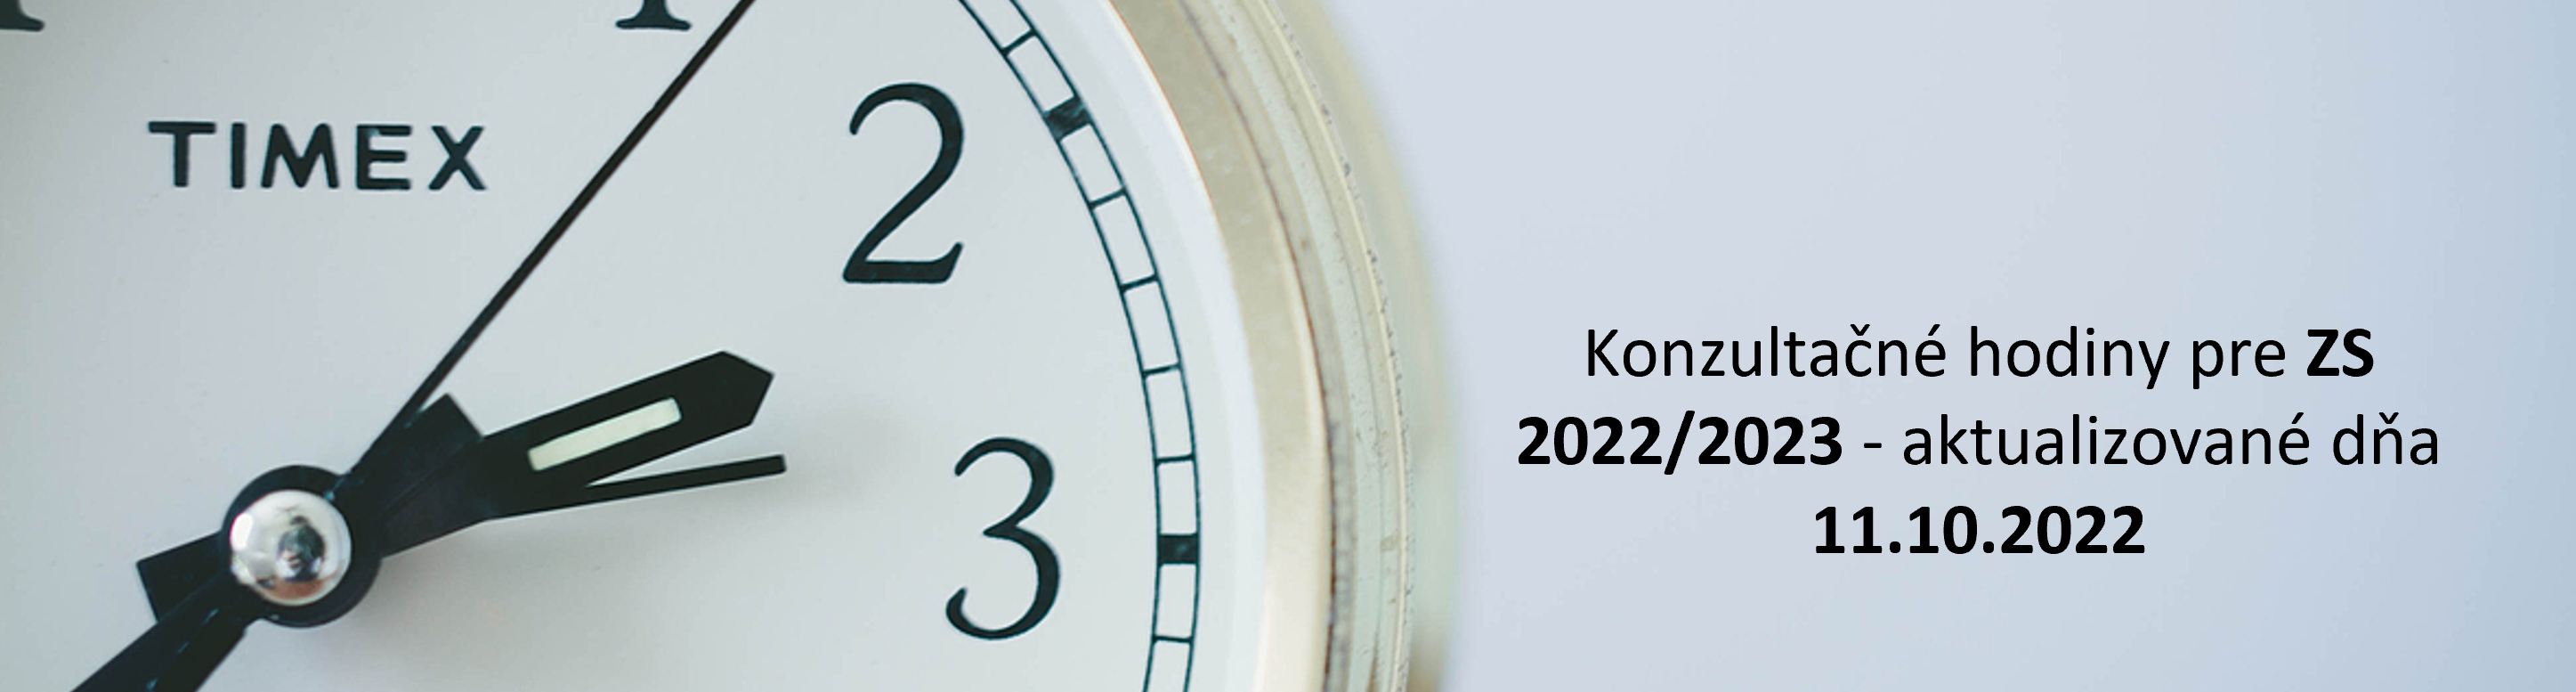 Konzul.hodiny pre ZS 2022 2023 SK